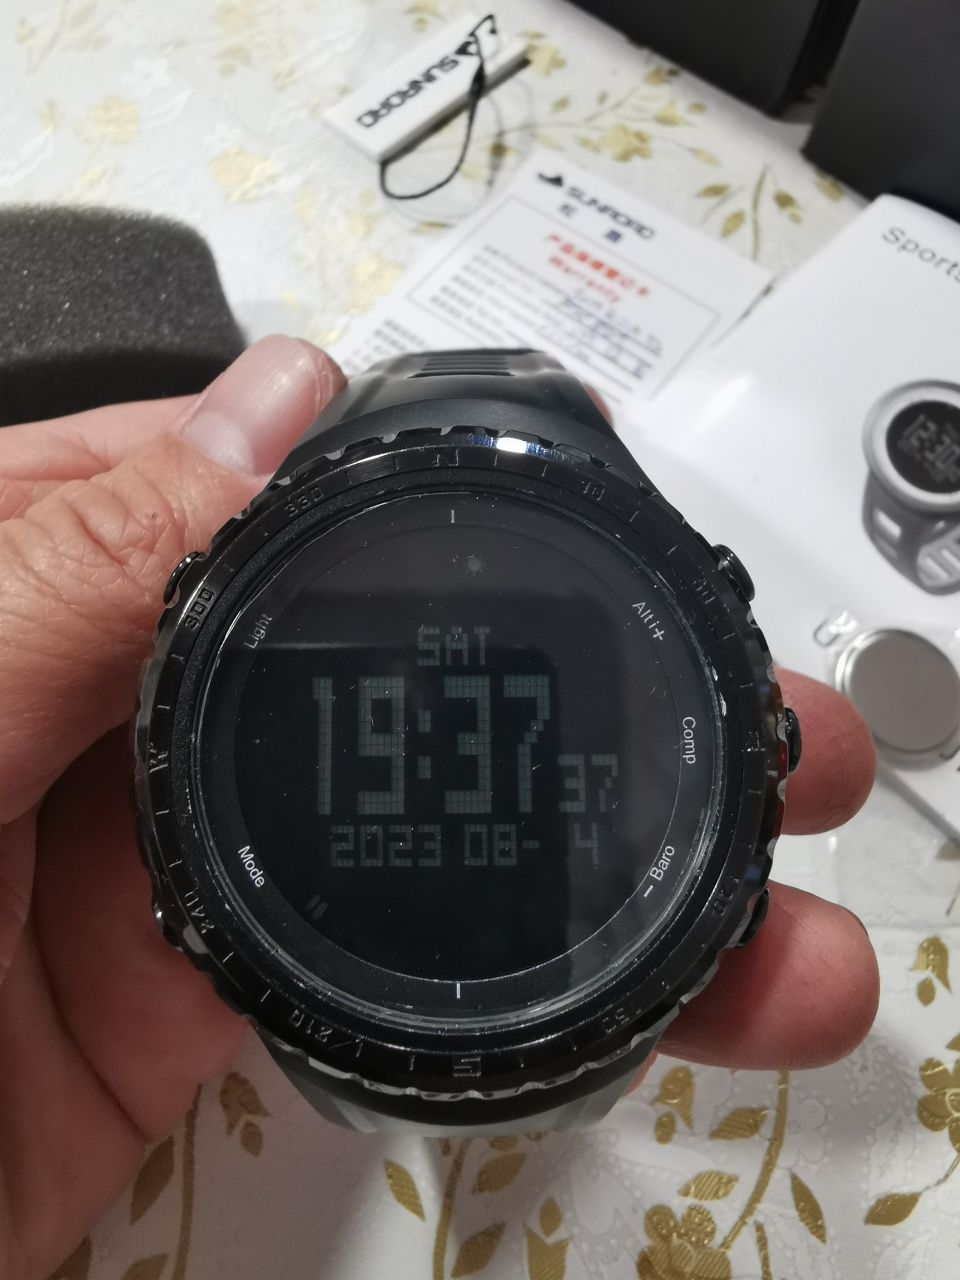 Sunroad fr 803 watch